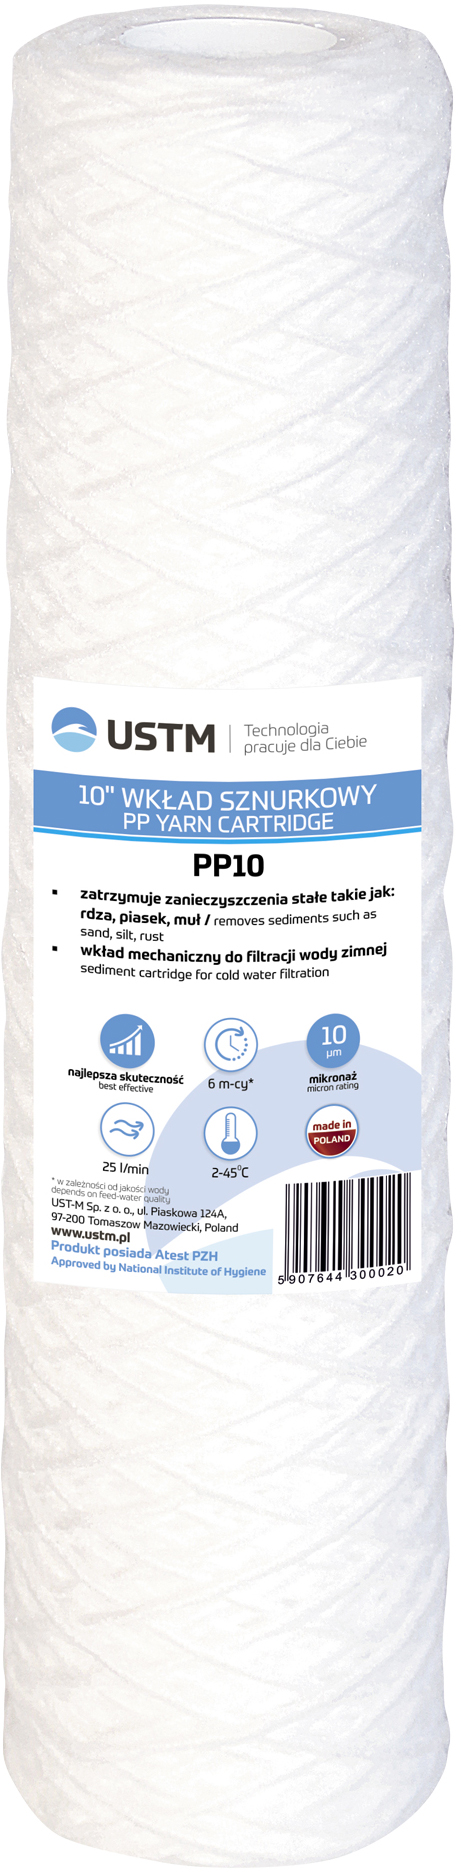 Картридж для фильтра USTM PP10 в интернет-магазине, главное фото